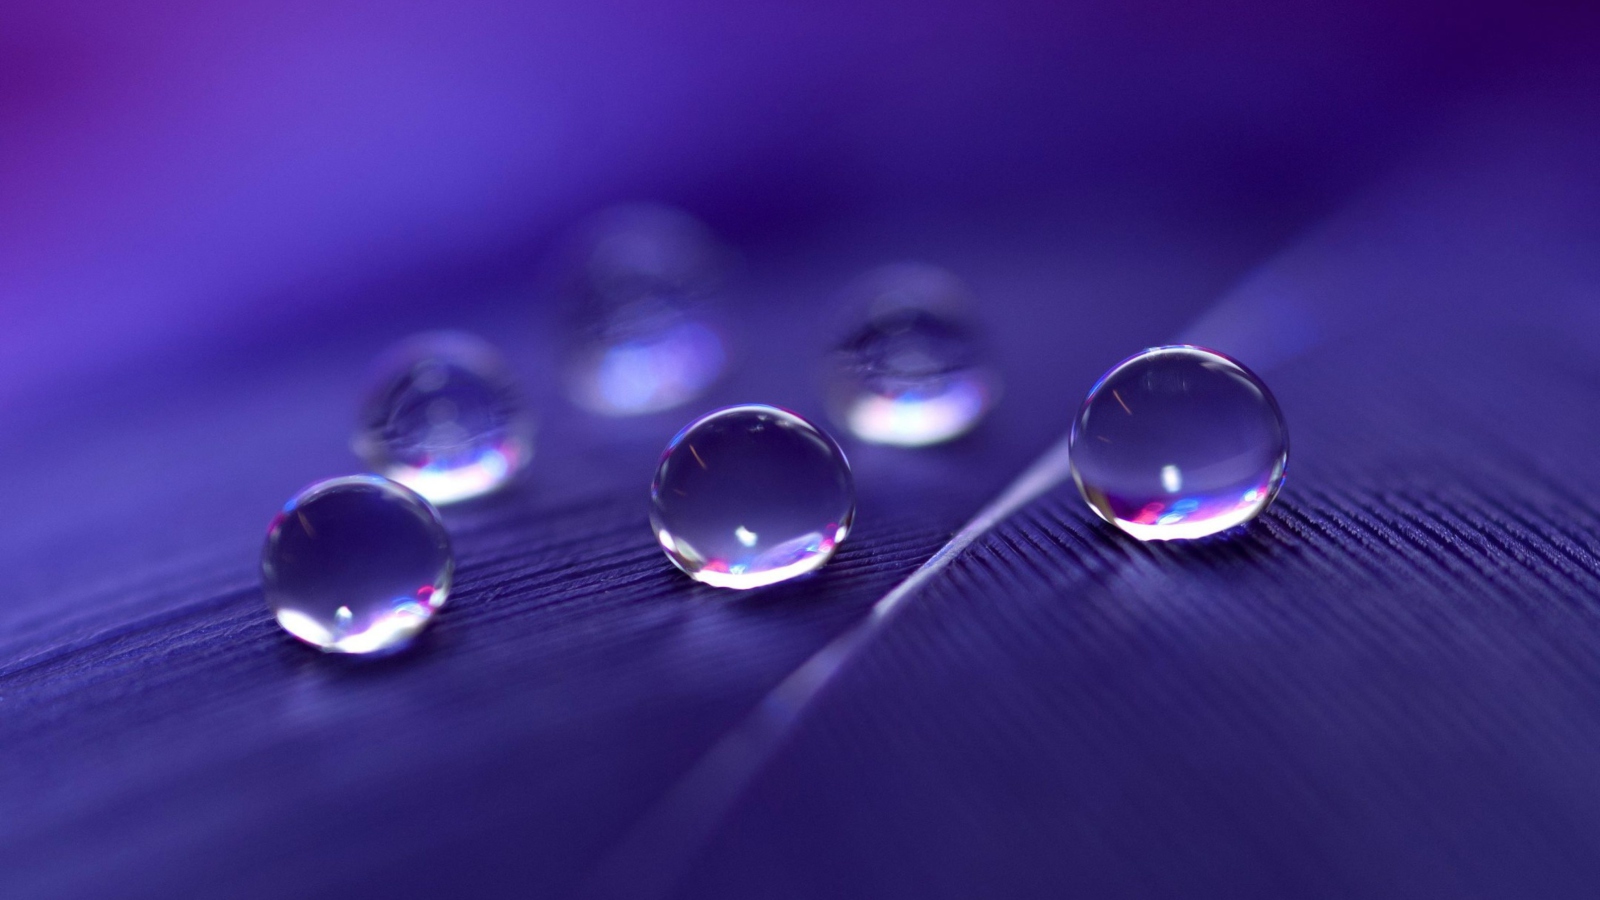 Обои Water Droplets 1600x900